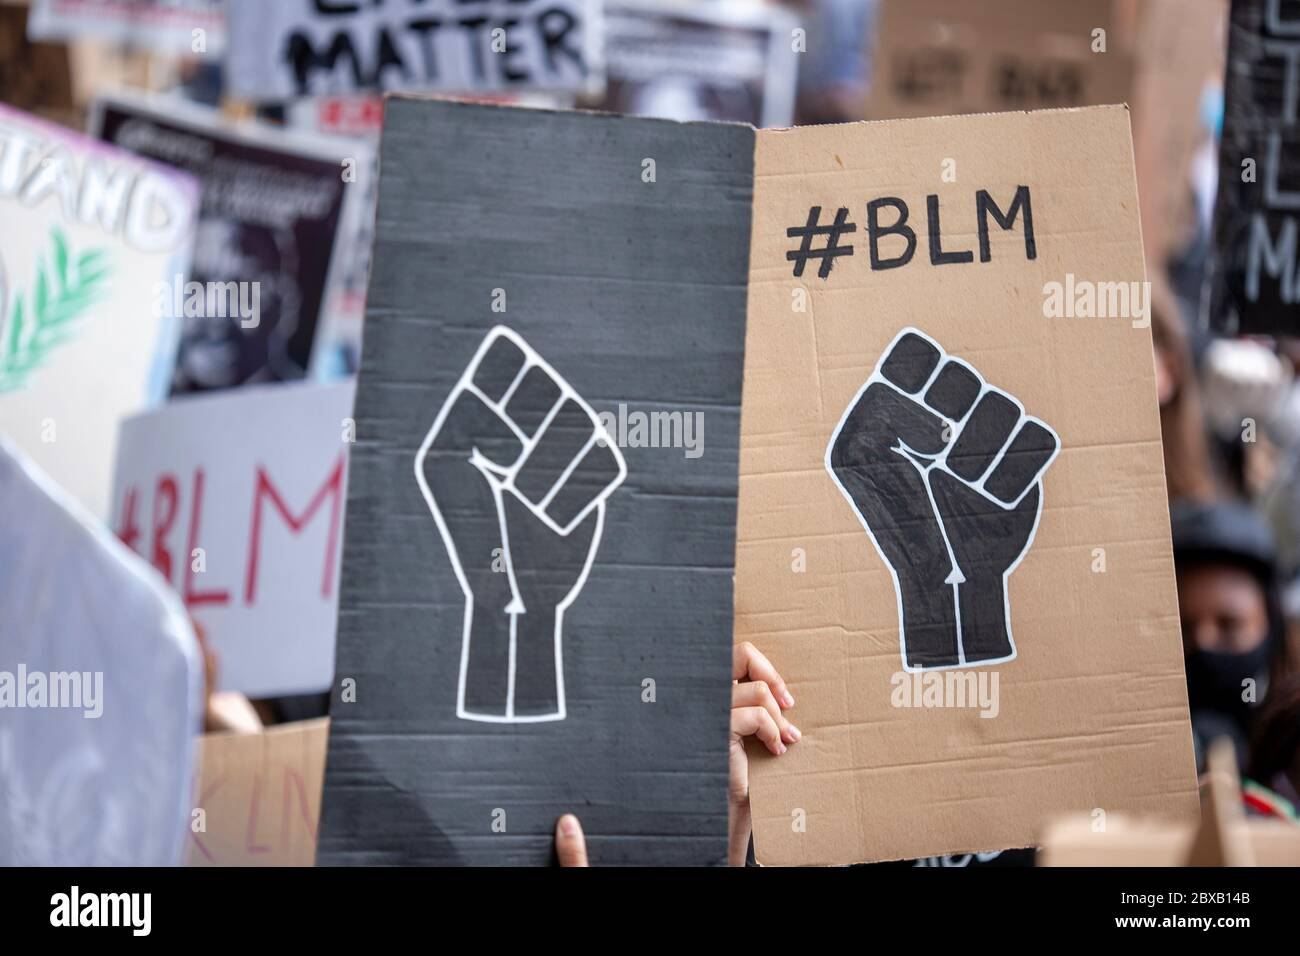 Deux pancartes maison #BLM de poing noir se distinguent dans une mer de panneaux à la Black Lives Matter de protestation britannique, Parliament Square, Londres, Angleterre, Royaume-Uni Banque D'Images